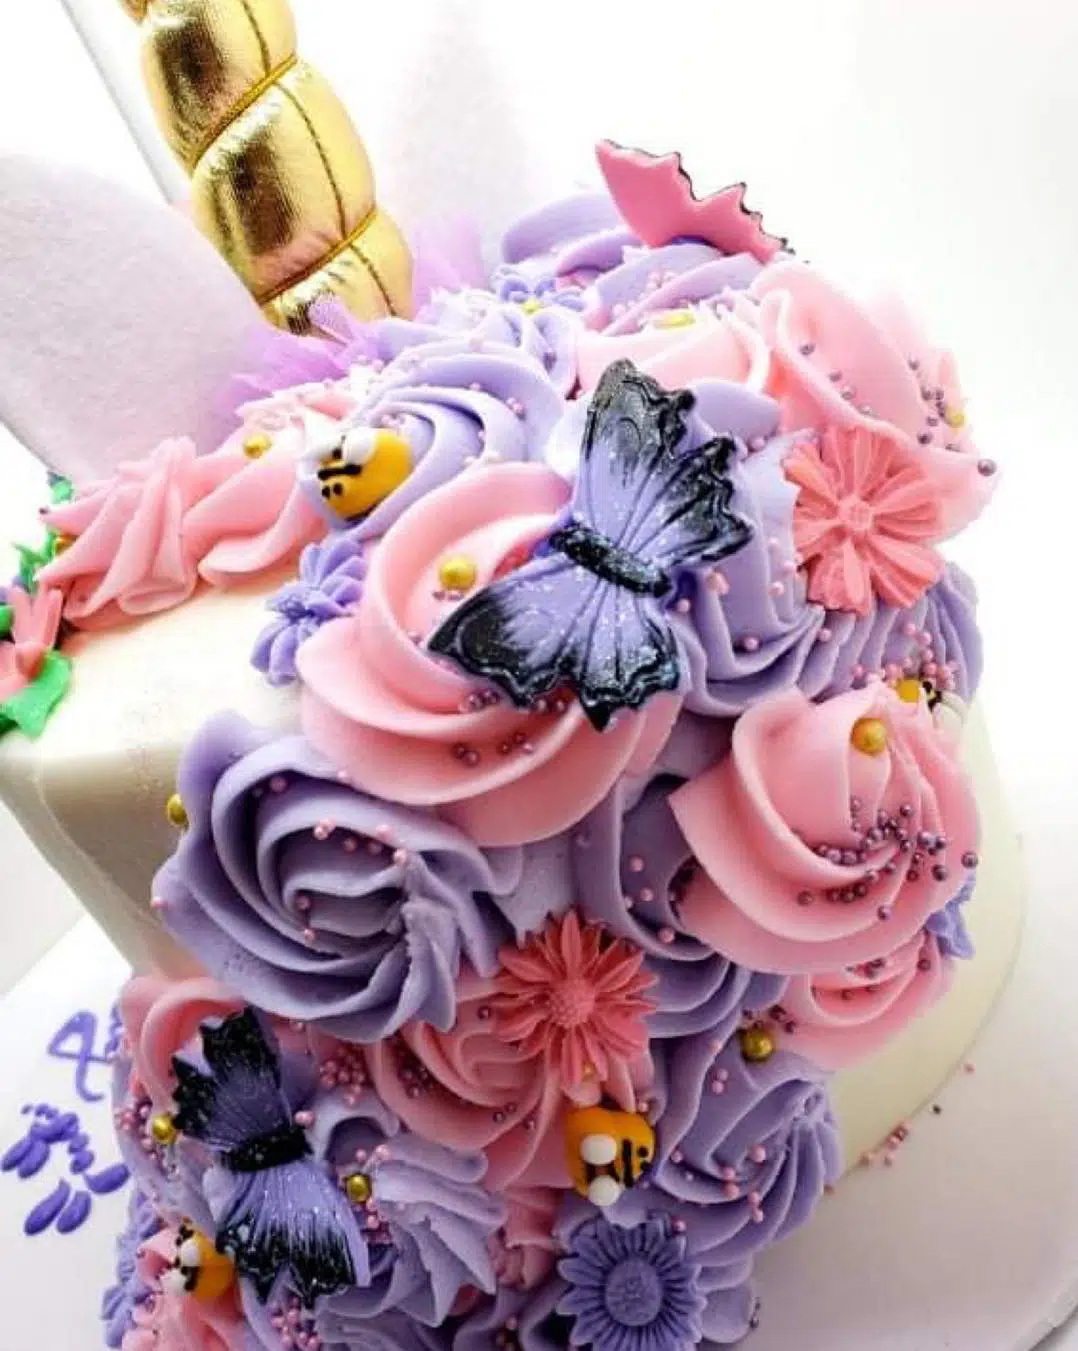 Back of unicorn cake details